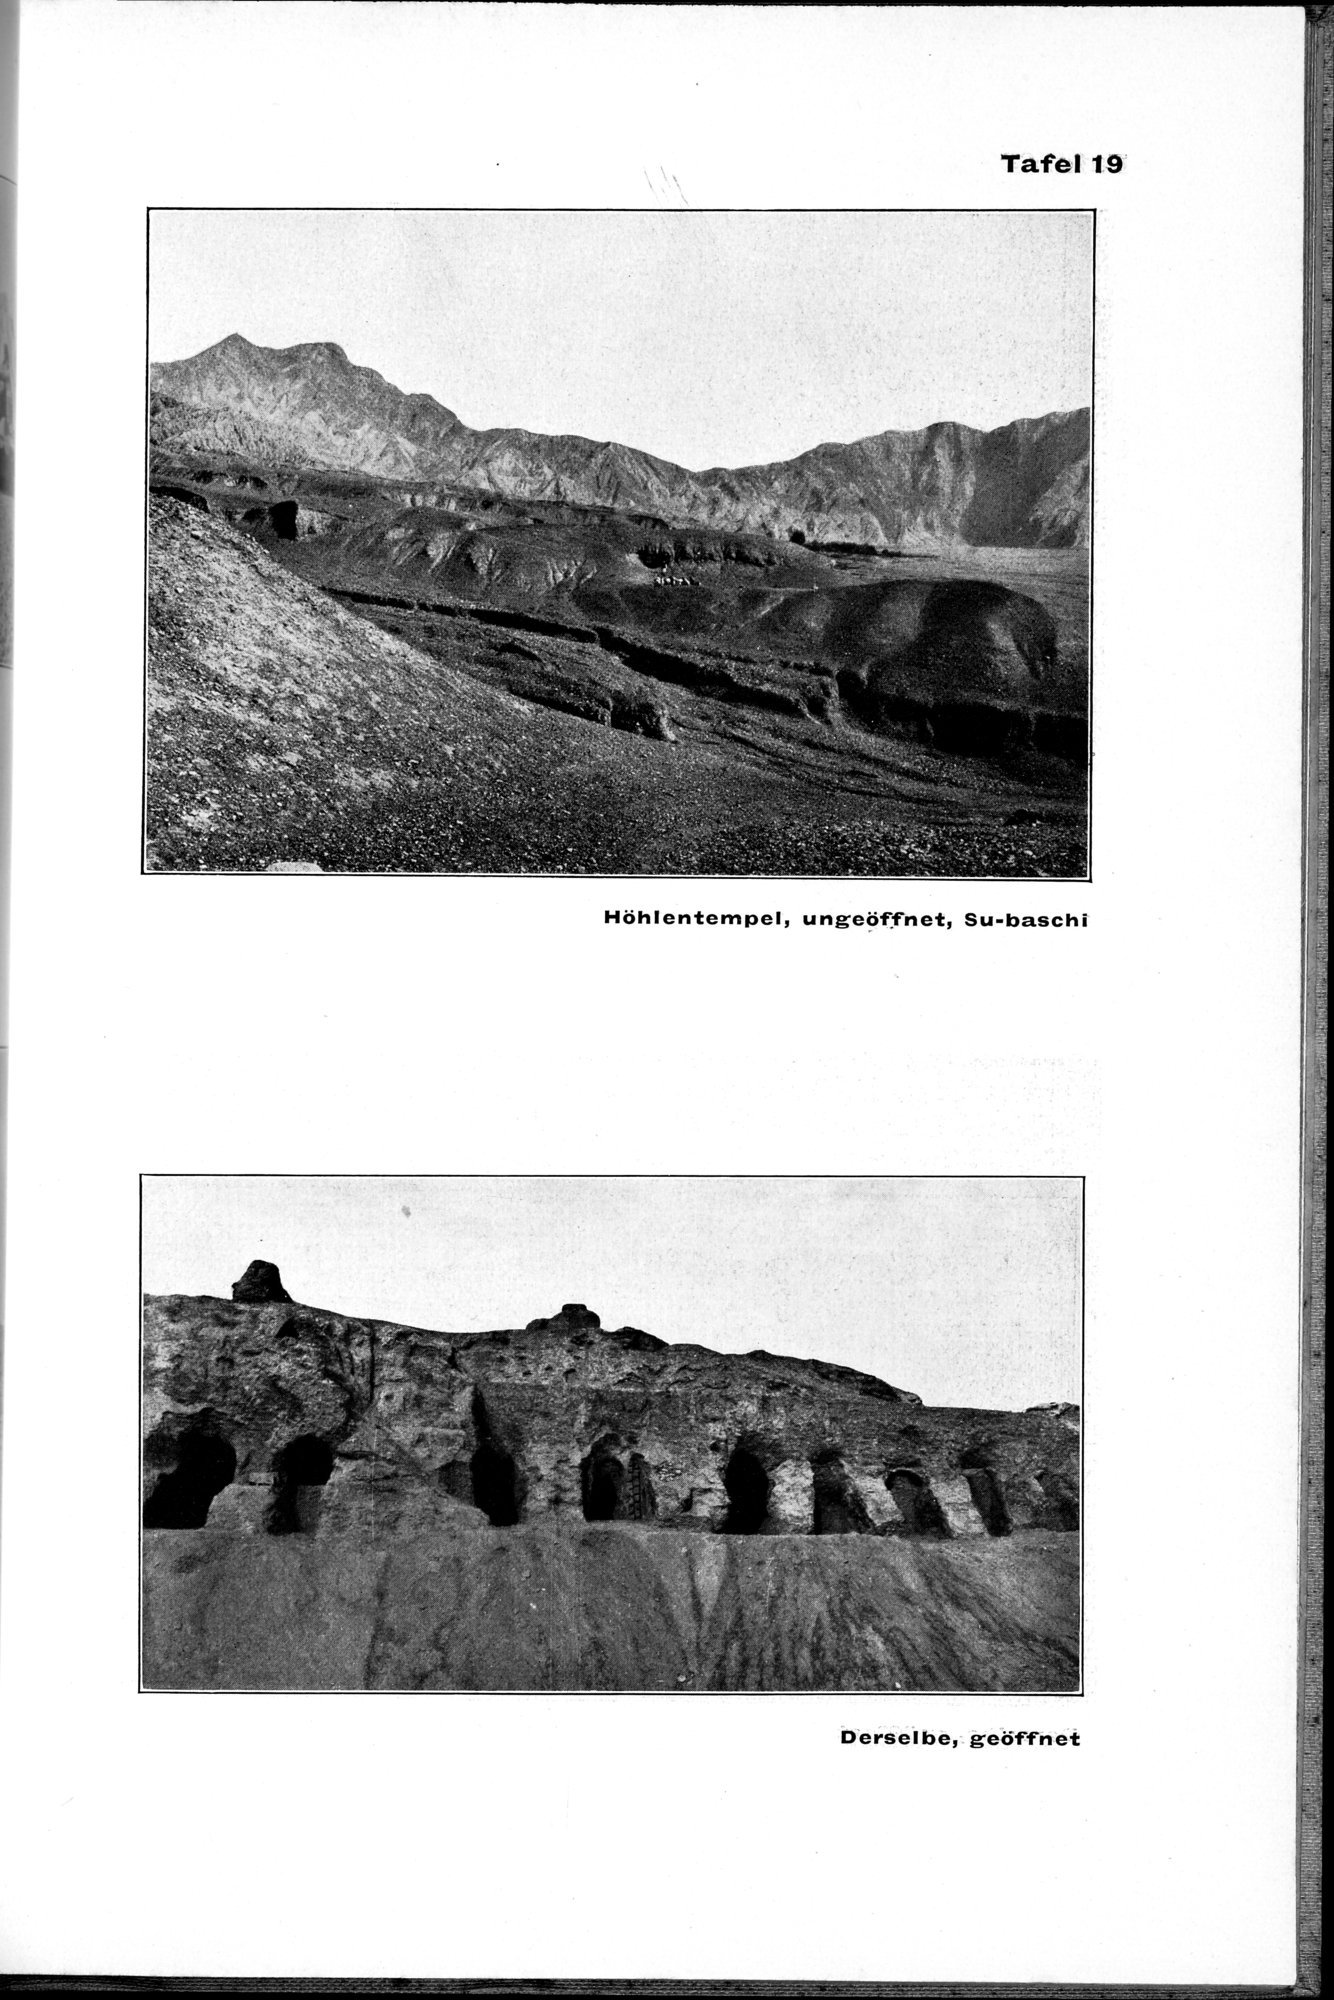 Von Land und Leuten in Ostturkistan : vol.1 / Page 103 (Grayscale High Resolution Image)